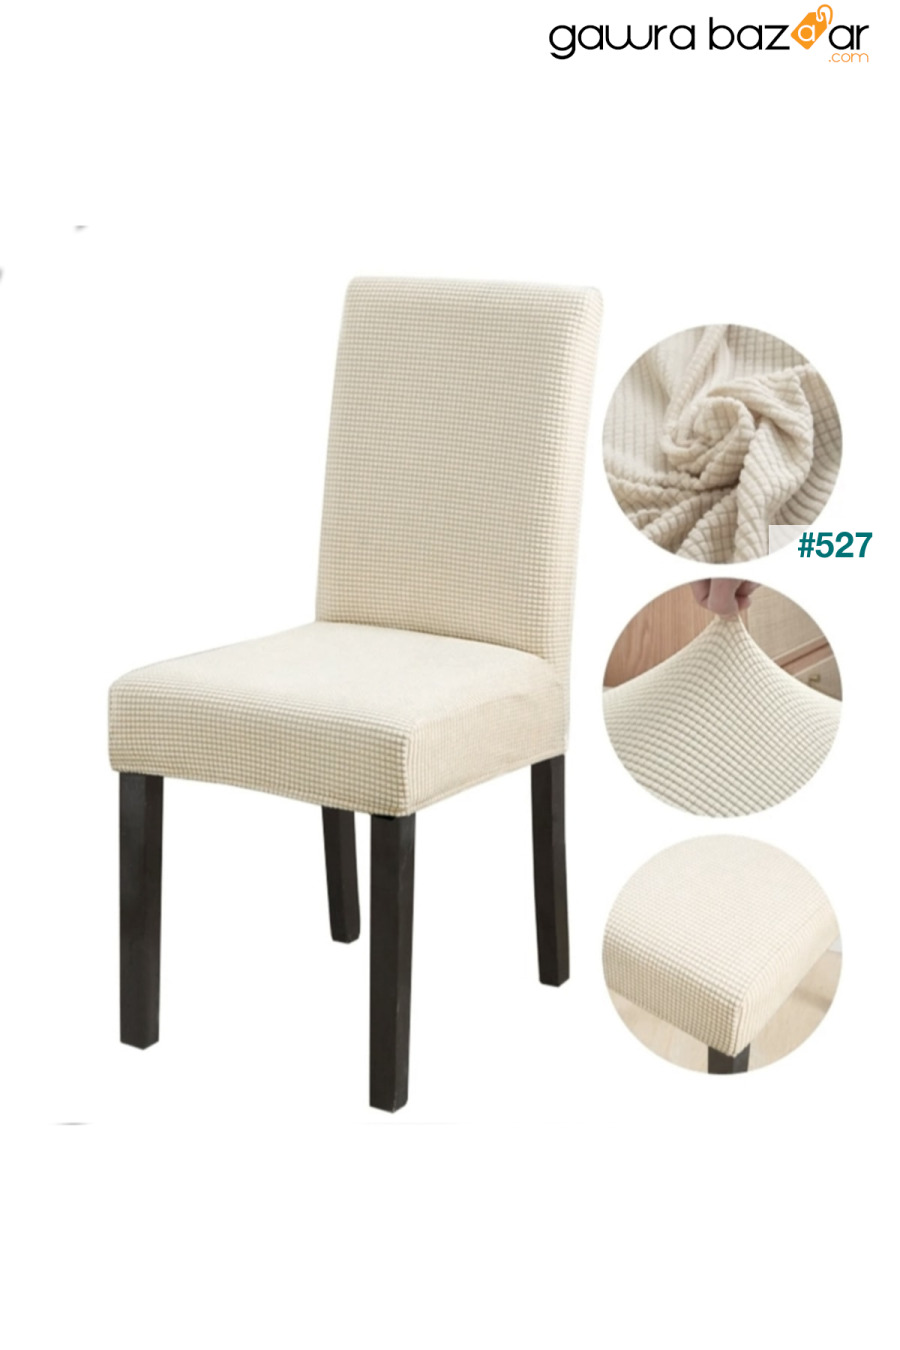 غطاء كرسي مطاطي من قماش البامبو ليكرا قابل للغسل - كريمي Bumedo 0